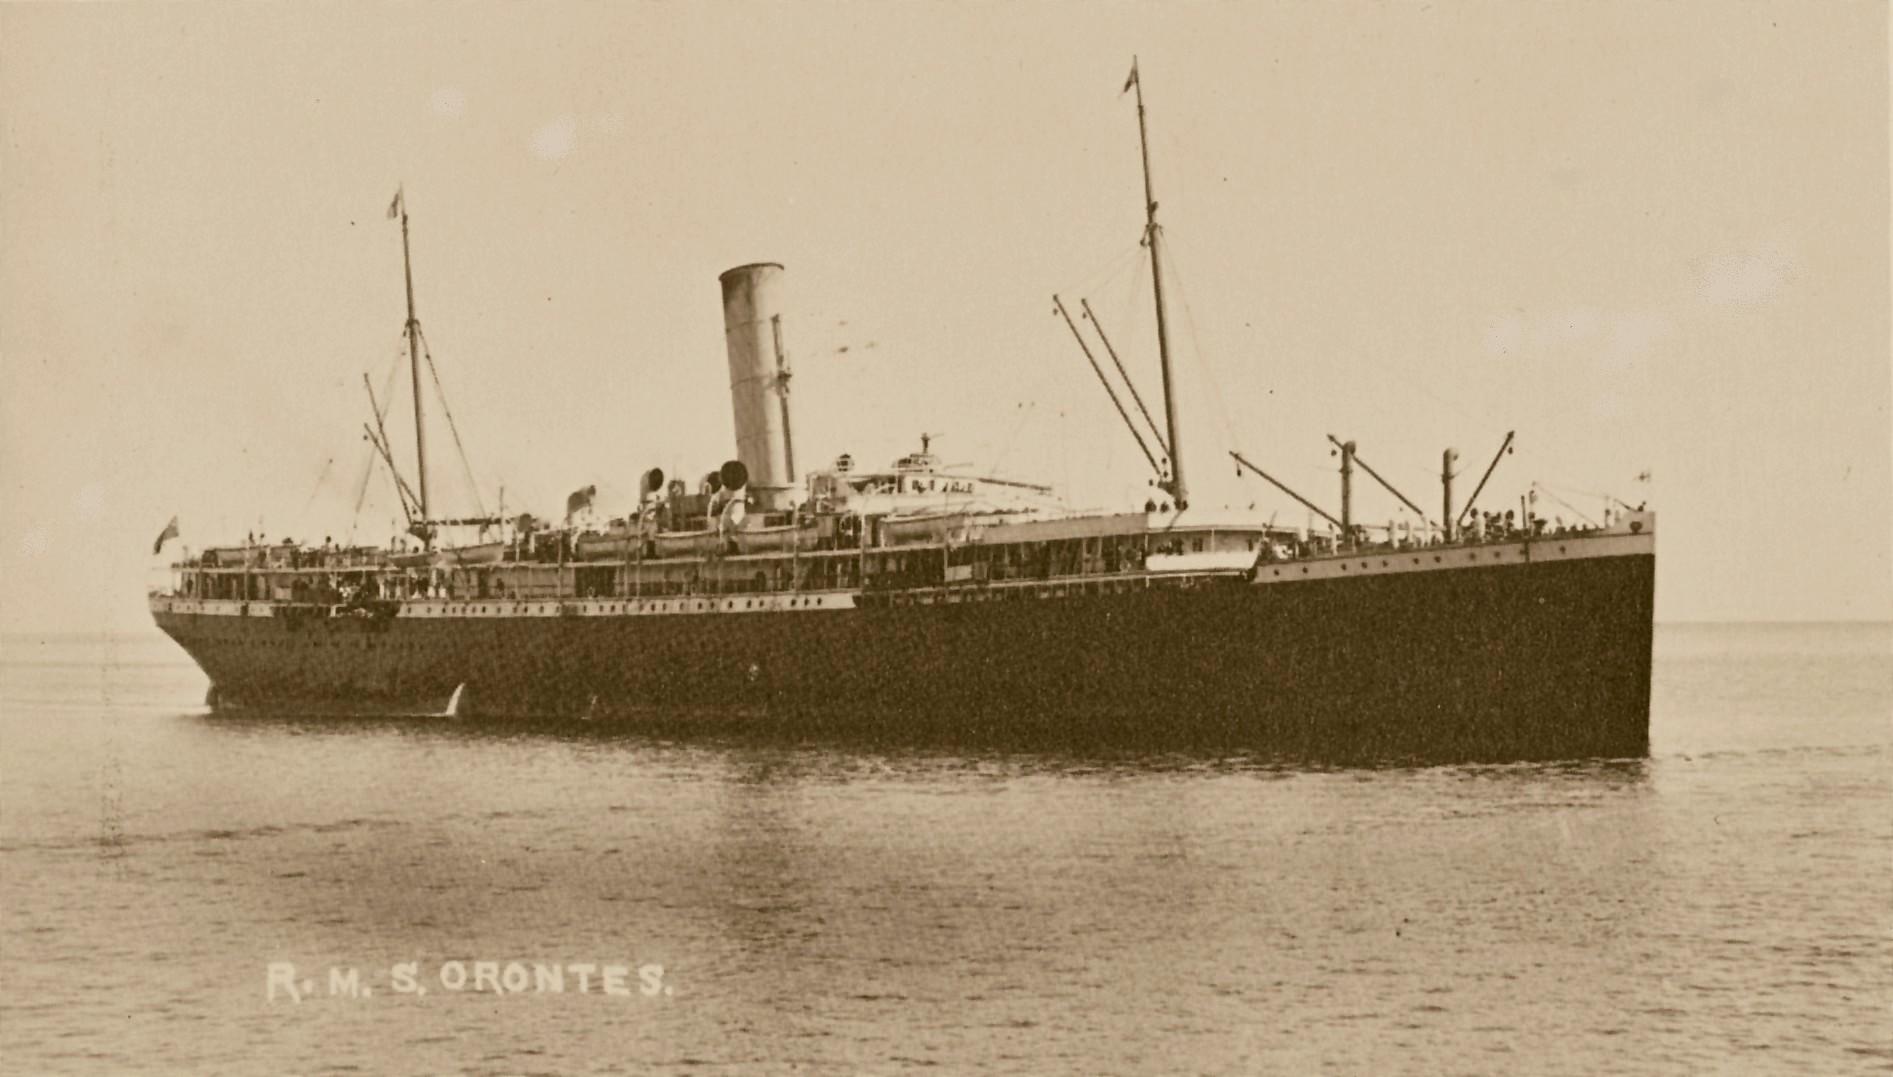 RMS Orontes